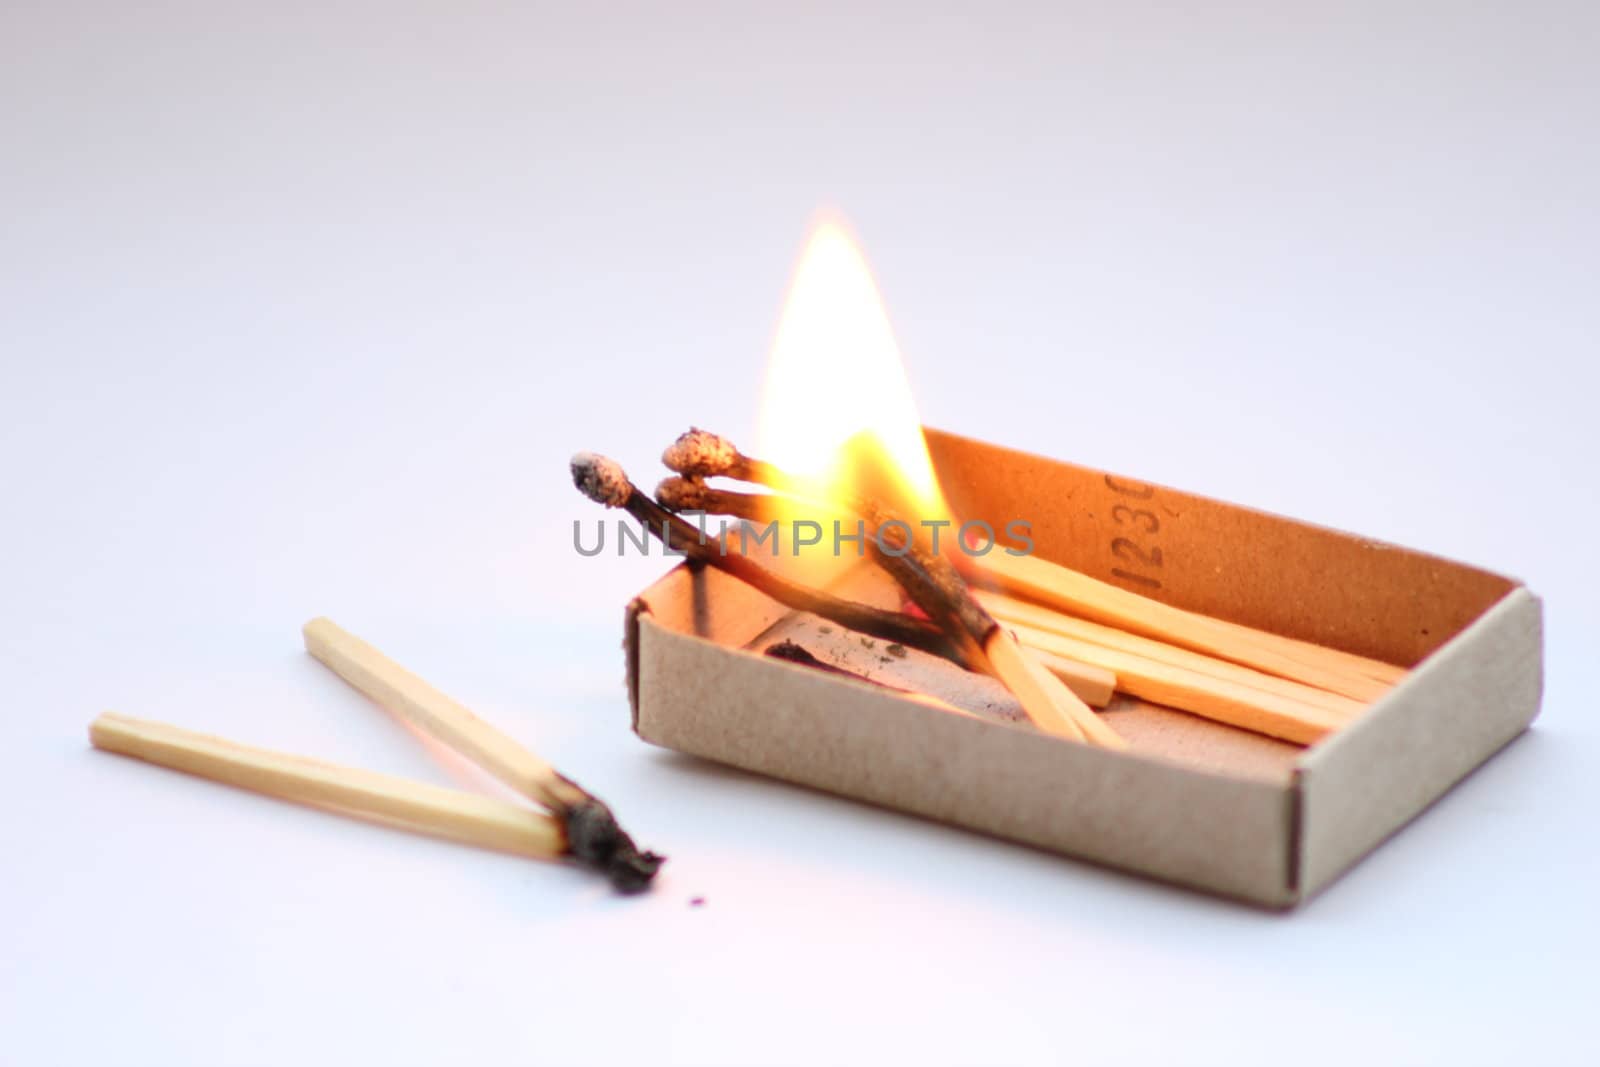 Matches burning inside a matchbox.